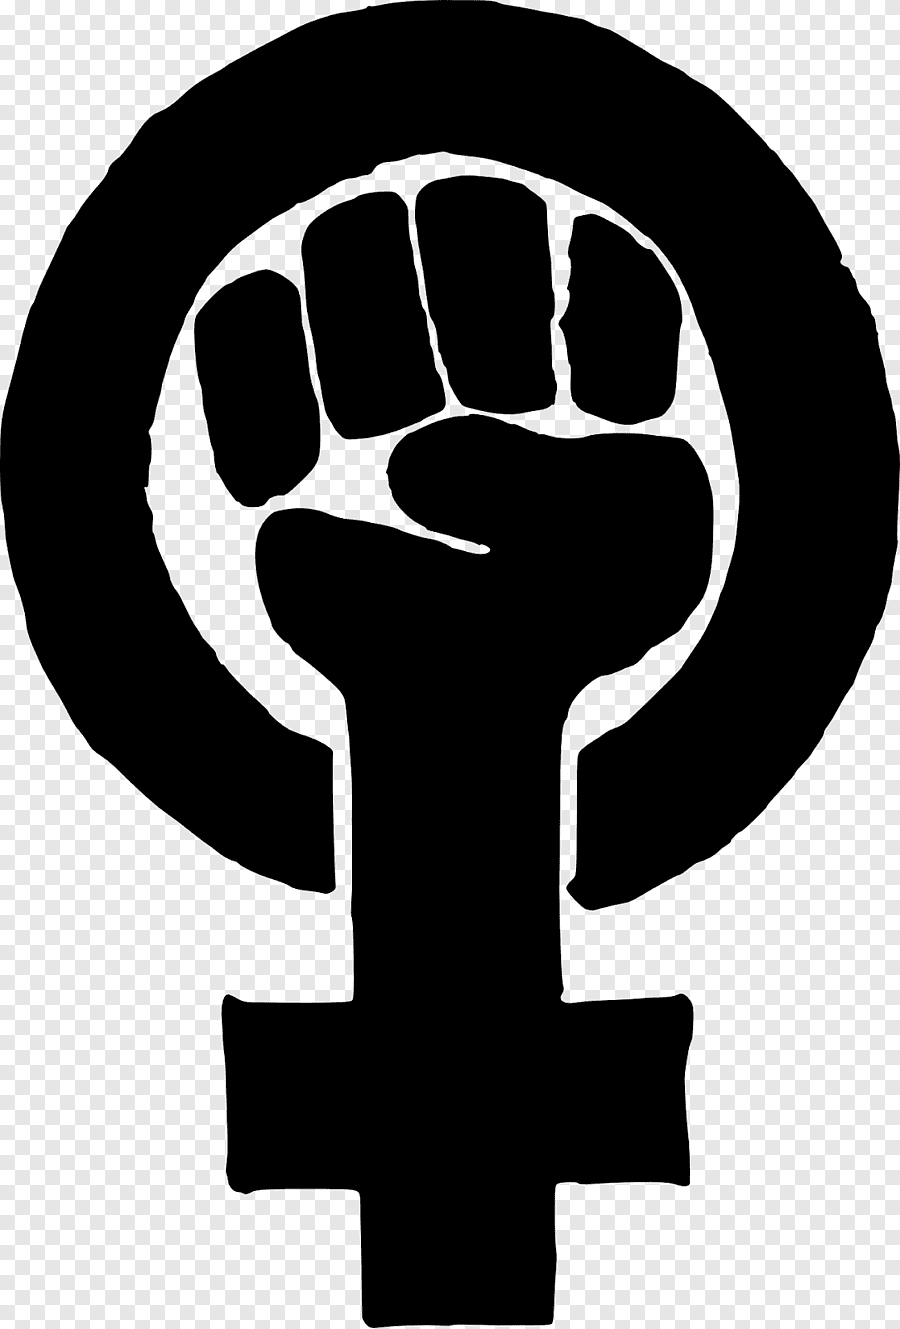 Знак феминизма символ. Символ феминизма кулак. Логотип феминисток. Радикальный феминизм символ. Флаг феминизма